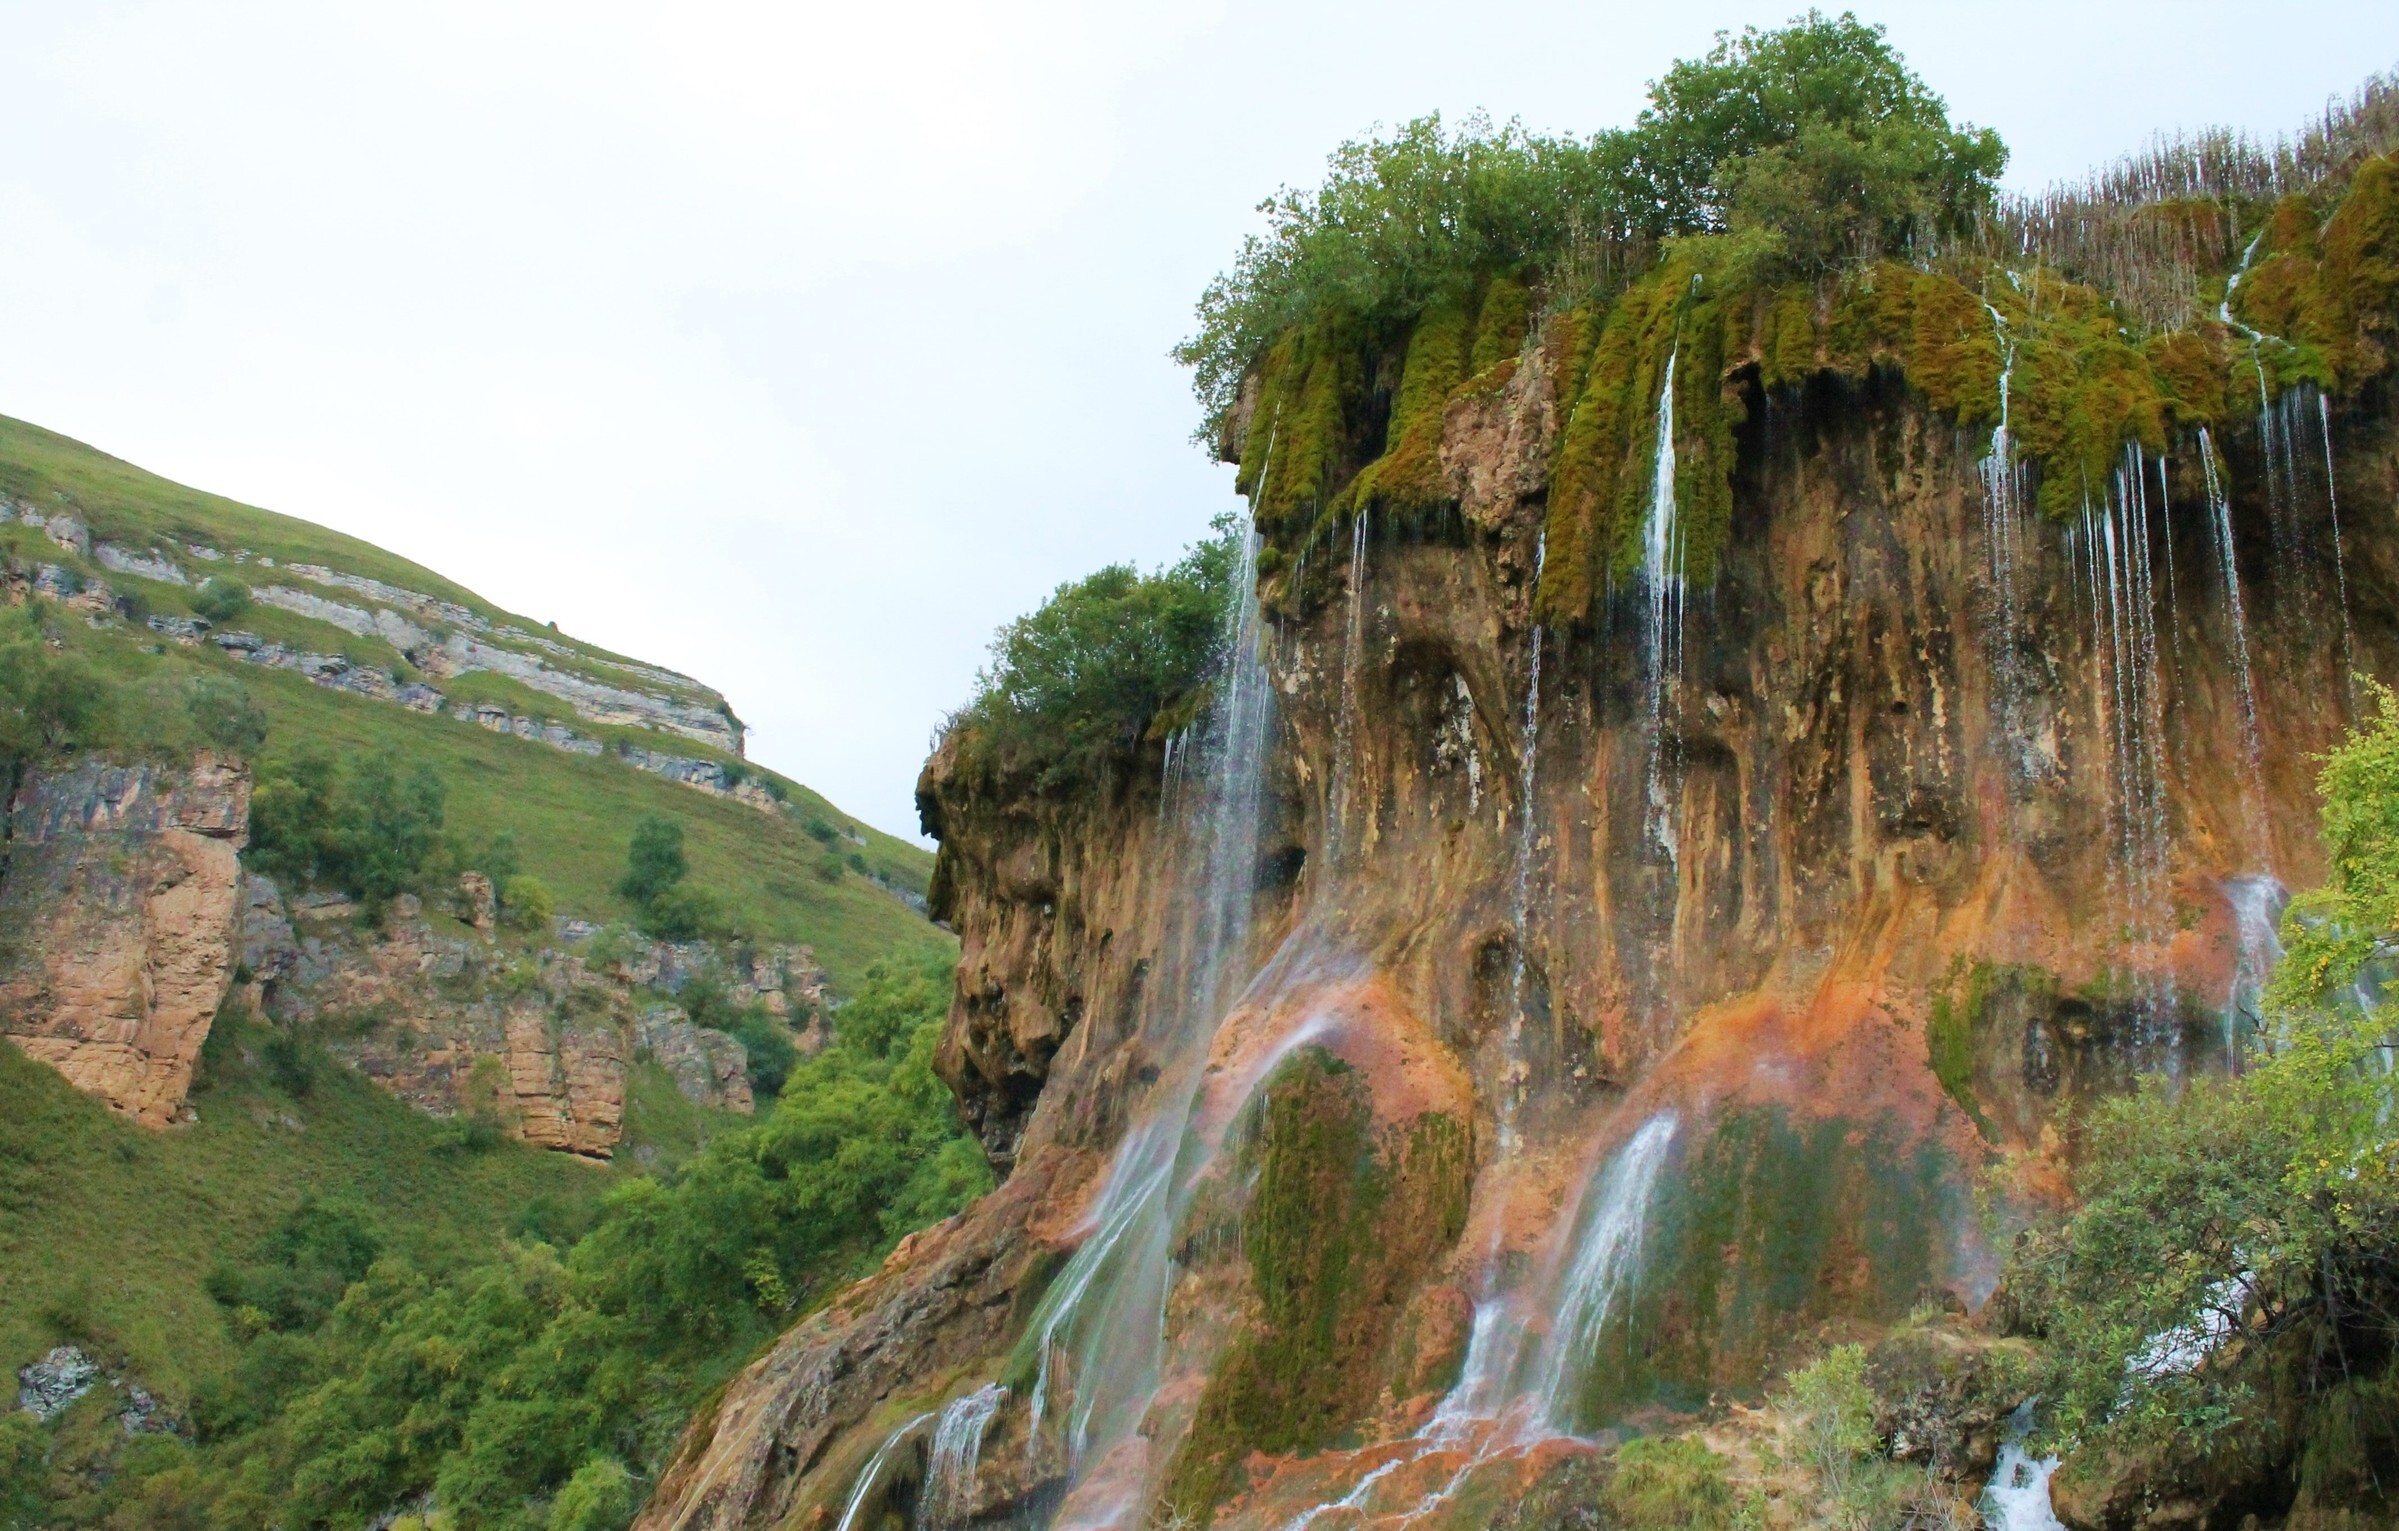 Царские водопады, Кабардино-Балкария – Царская корона, фото, где находится,  как проехать, маршрут, озеро